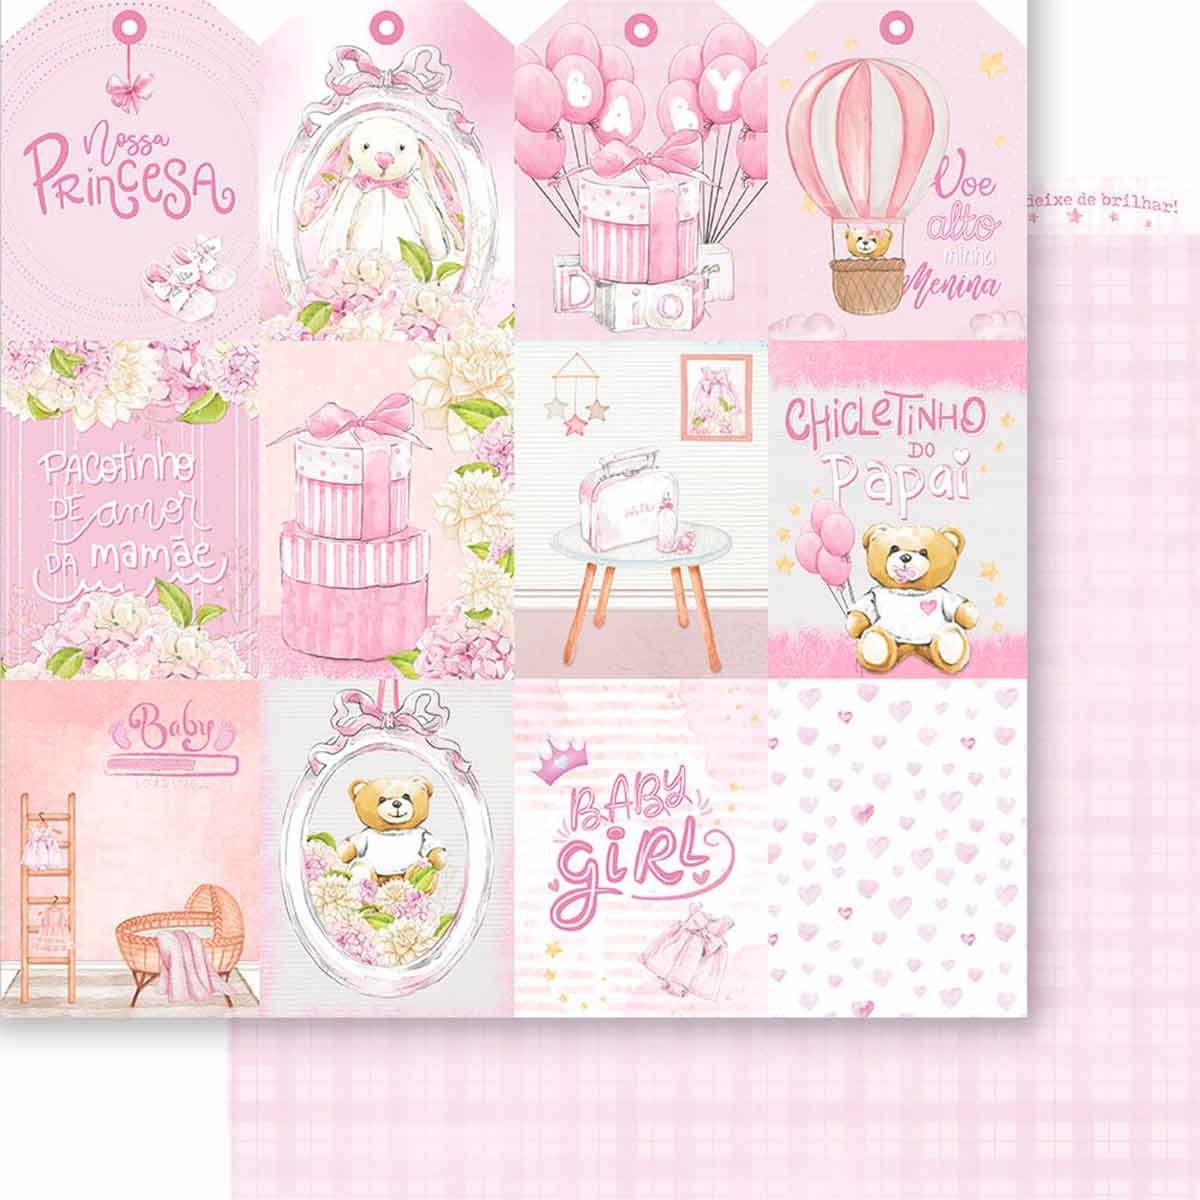 Forminha para Cupcake Poá Rosa e Branco - 45 Unidades - Extra Festas